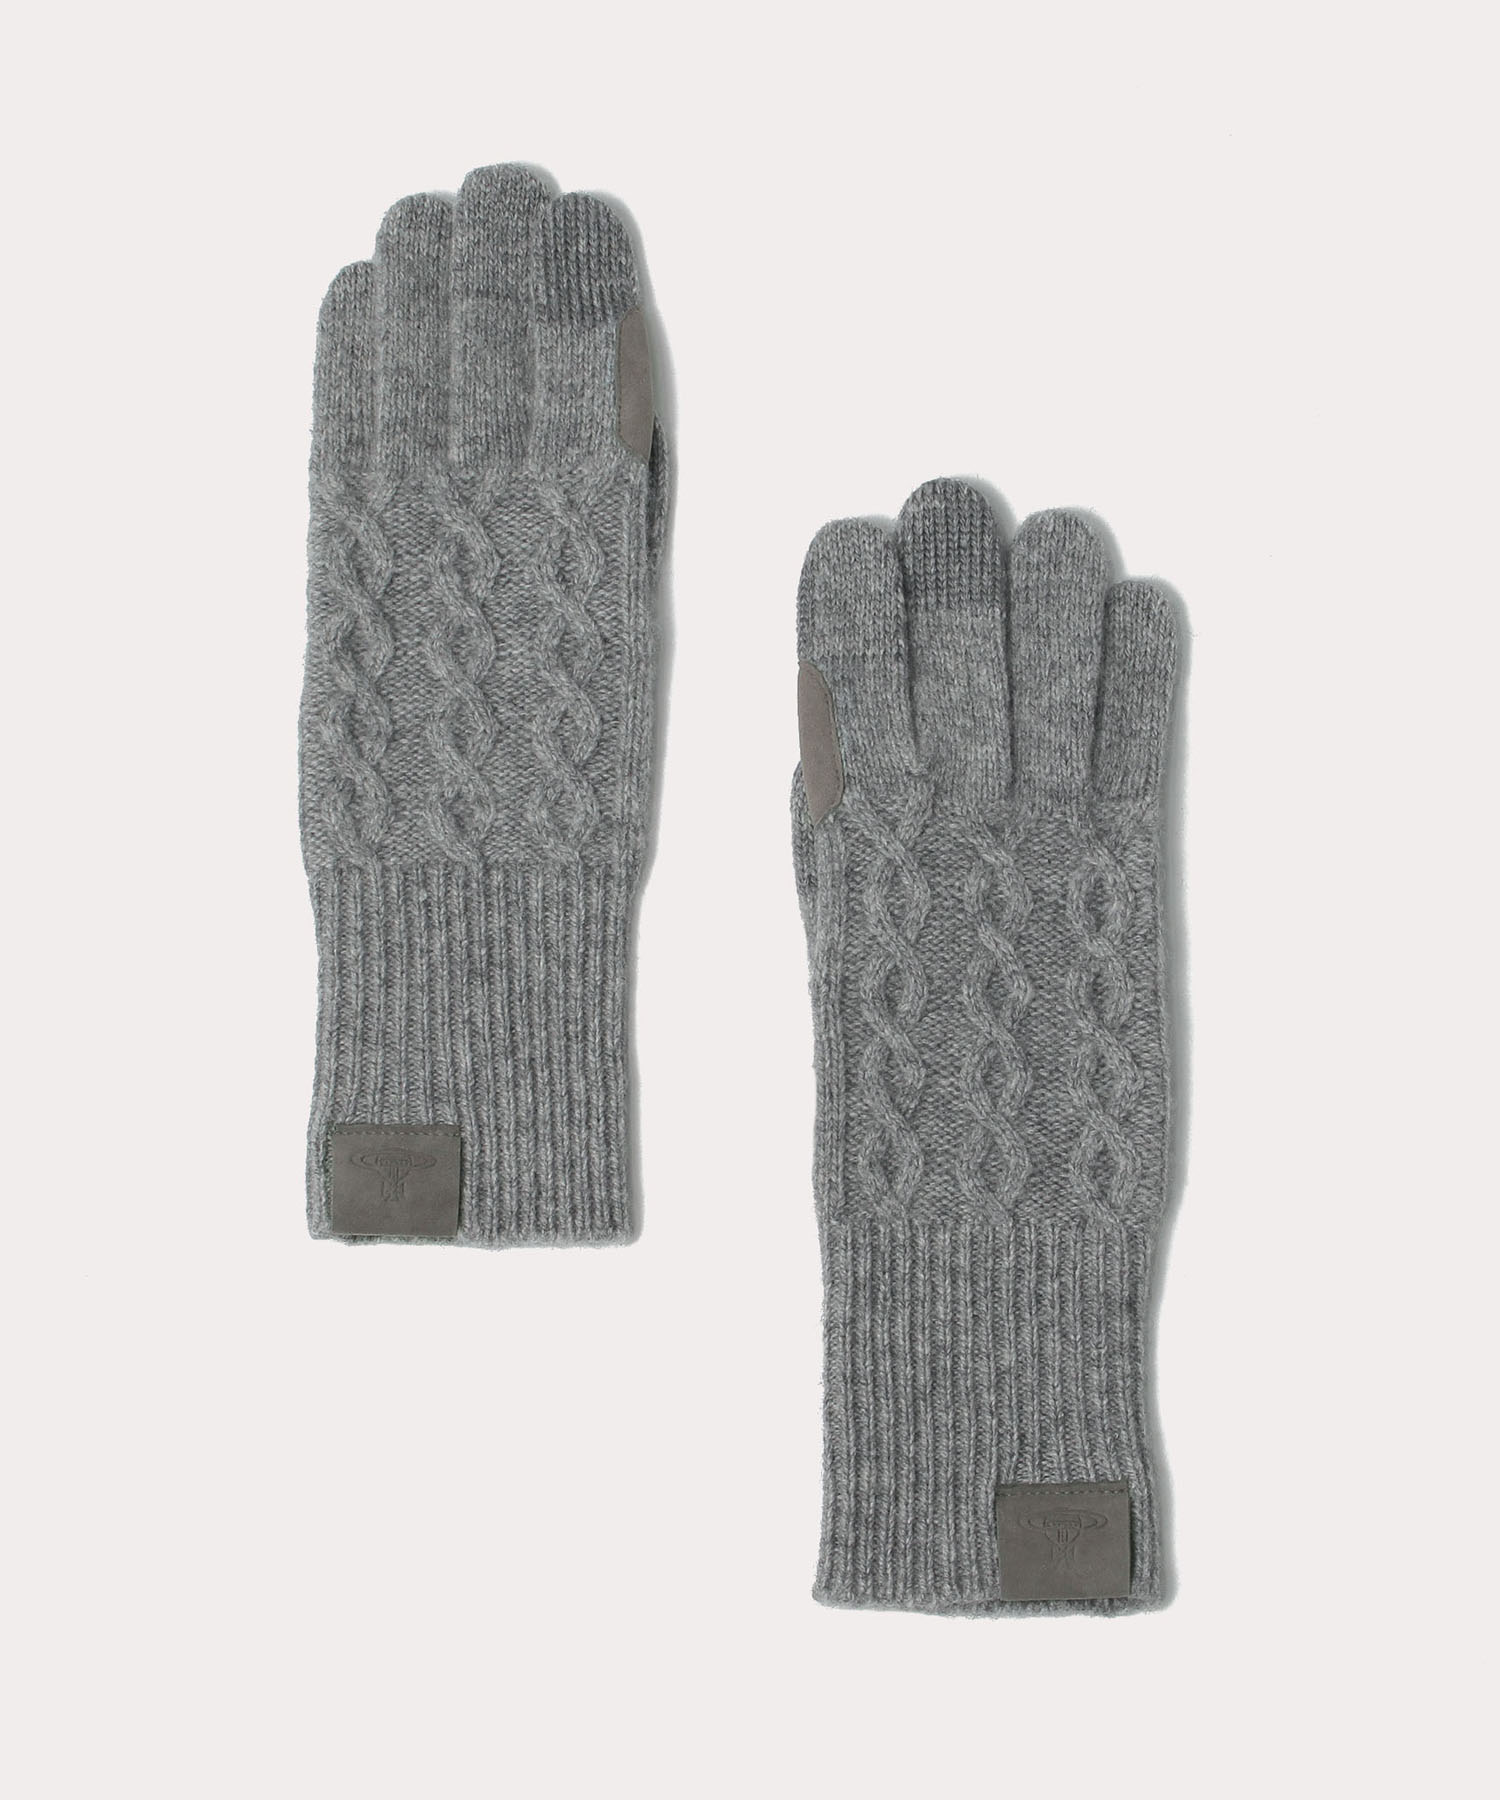 ケーブル編み ニット手袋